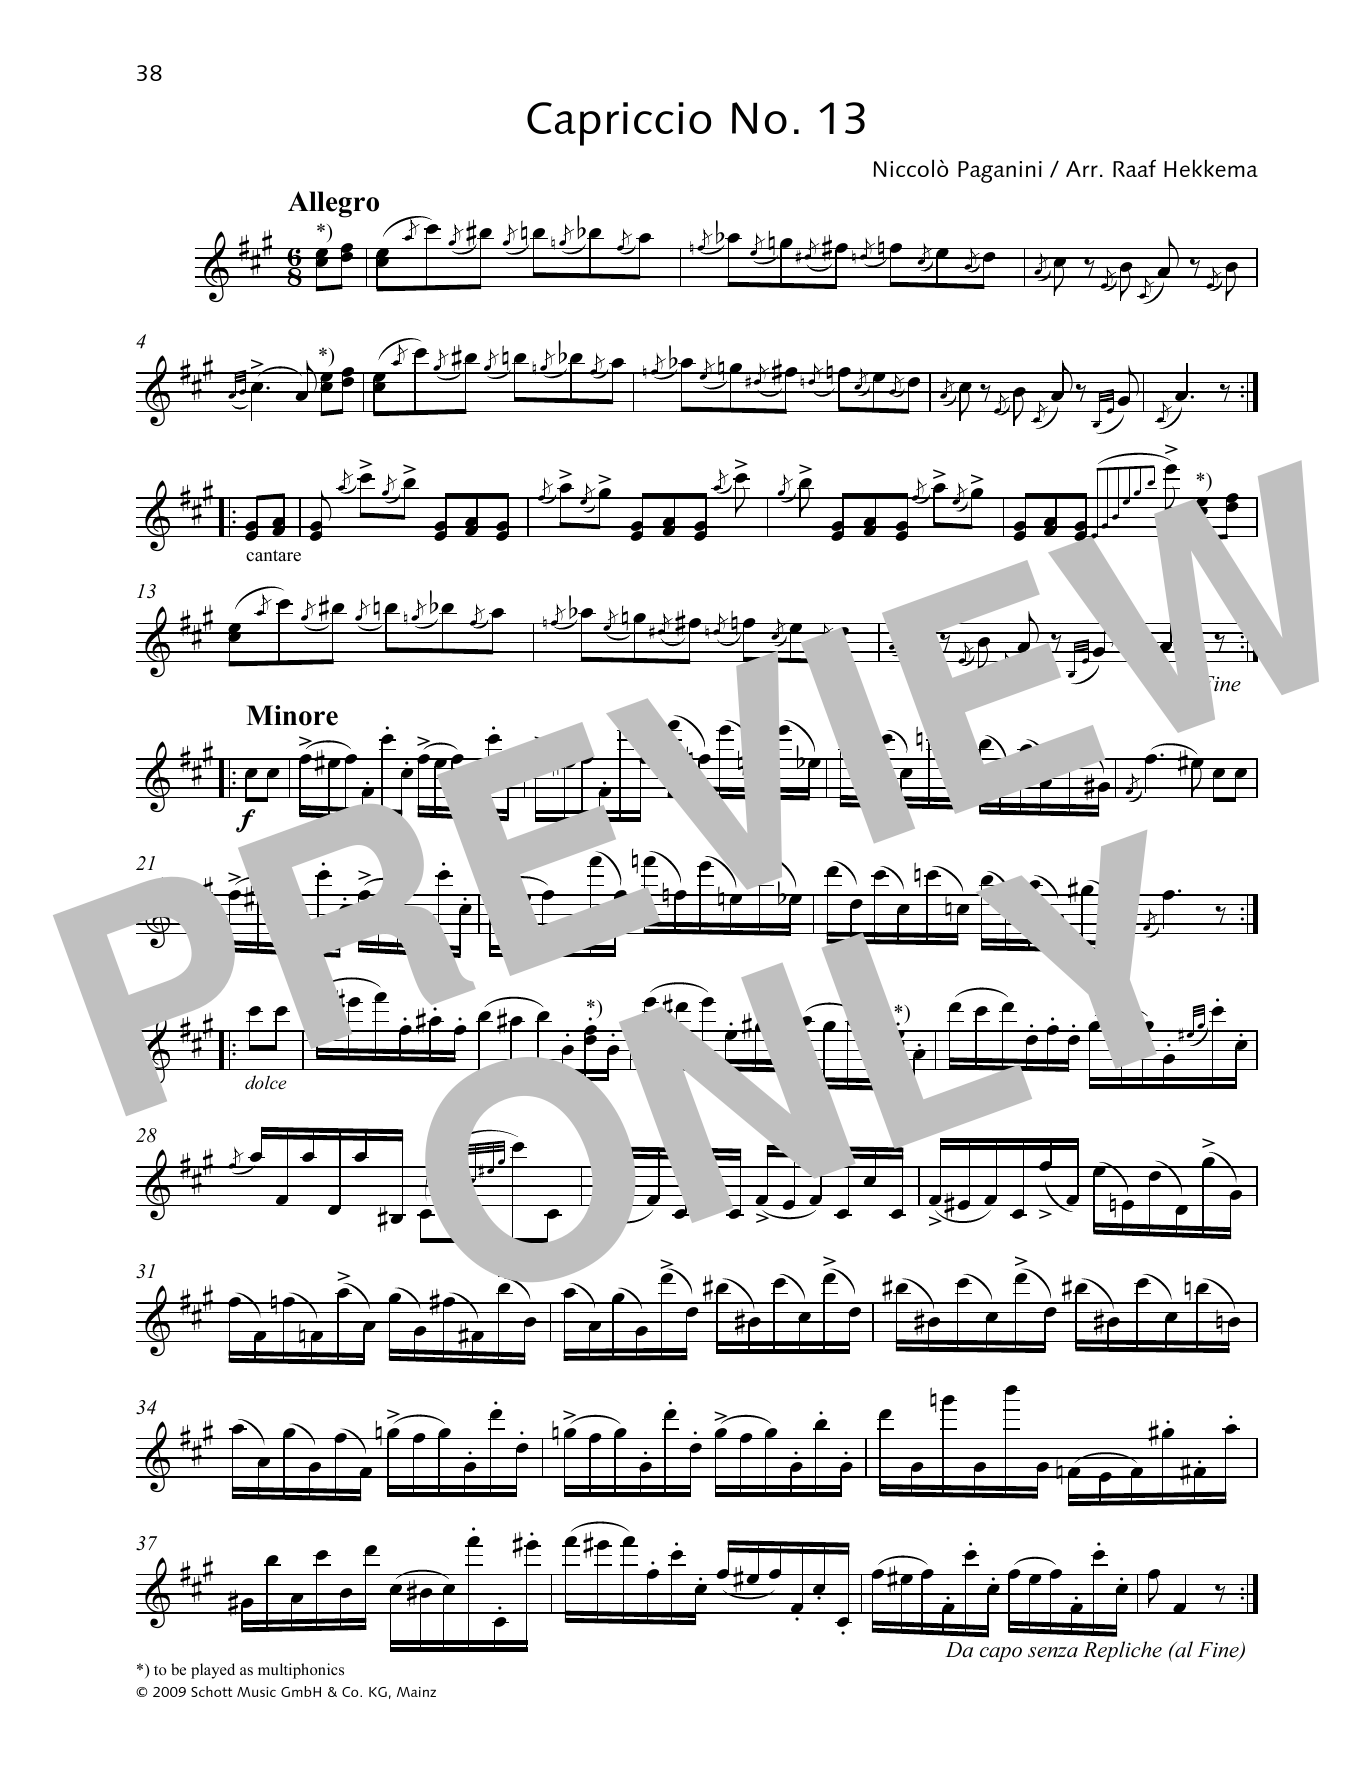 Download Niccolo Paganini Capriccio No. 13 Sheet Music